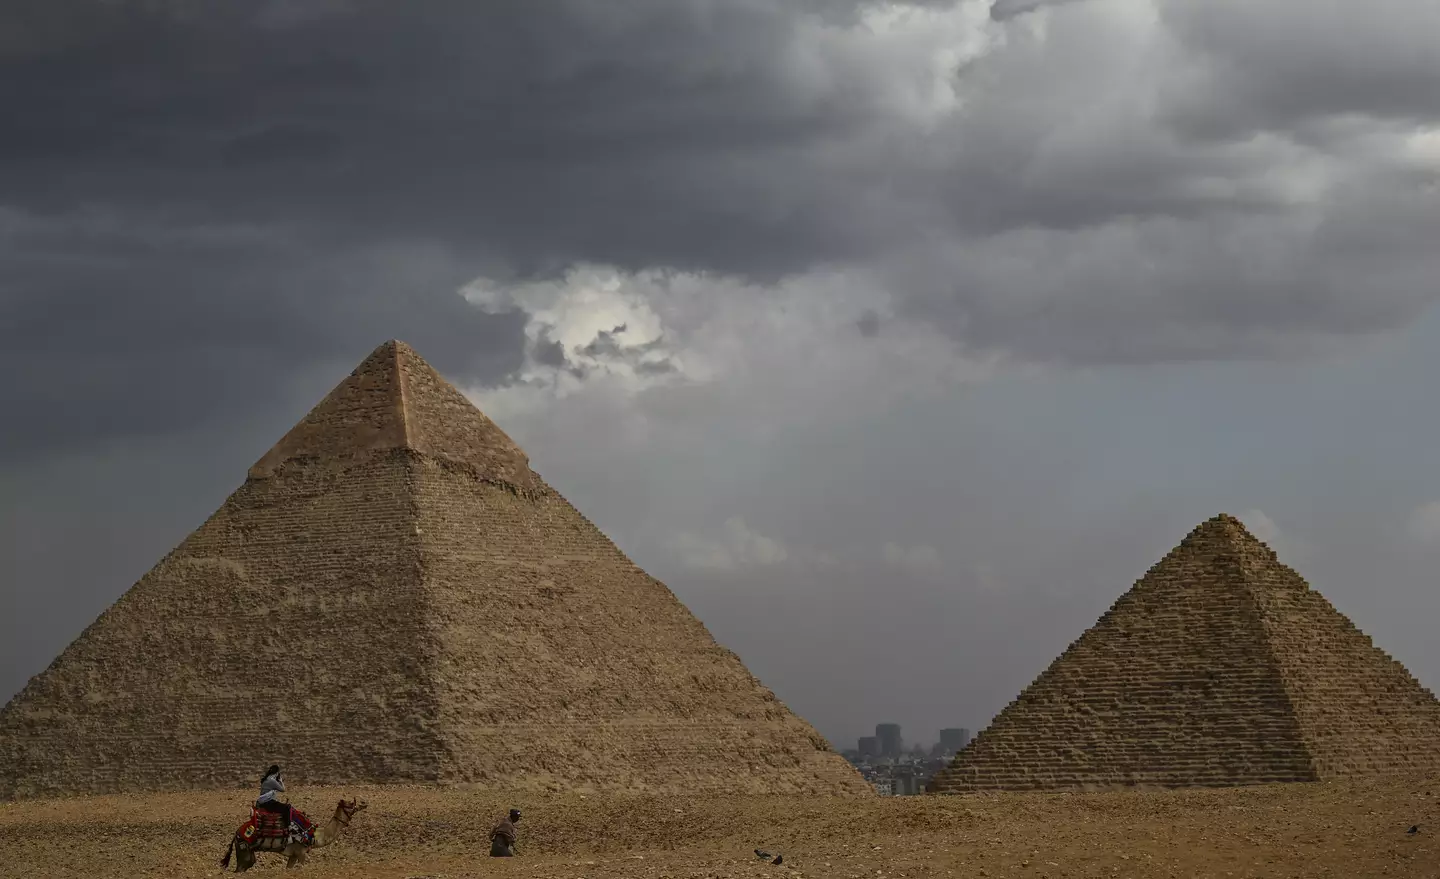 How do you think the pyramids were built?